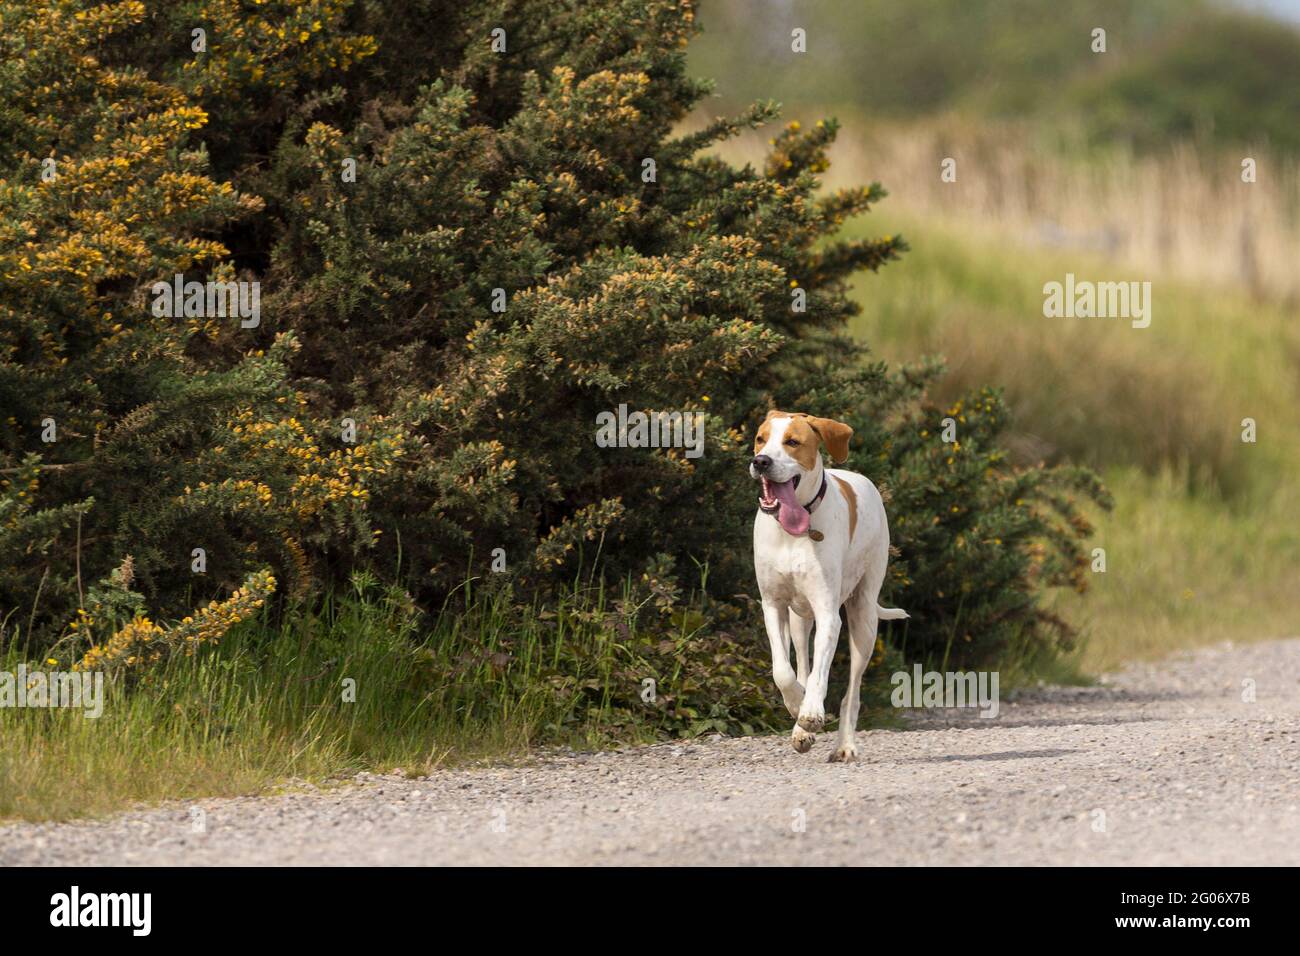 Chien de type Labrador en train de courir capturé avec un pied sur le chemin de gravier un chien blanc avec des taches brunes autour des yeux oreilles brunes et patch brun au dos Banque D'Images